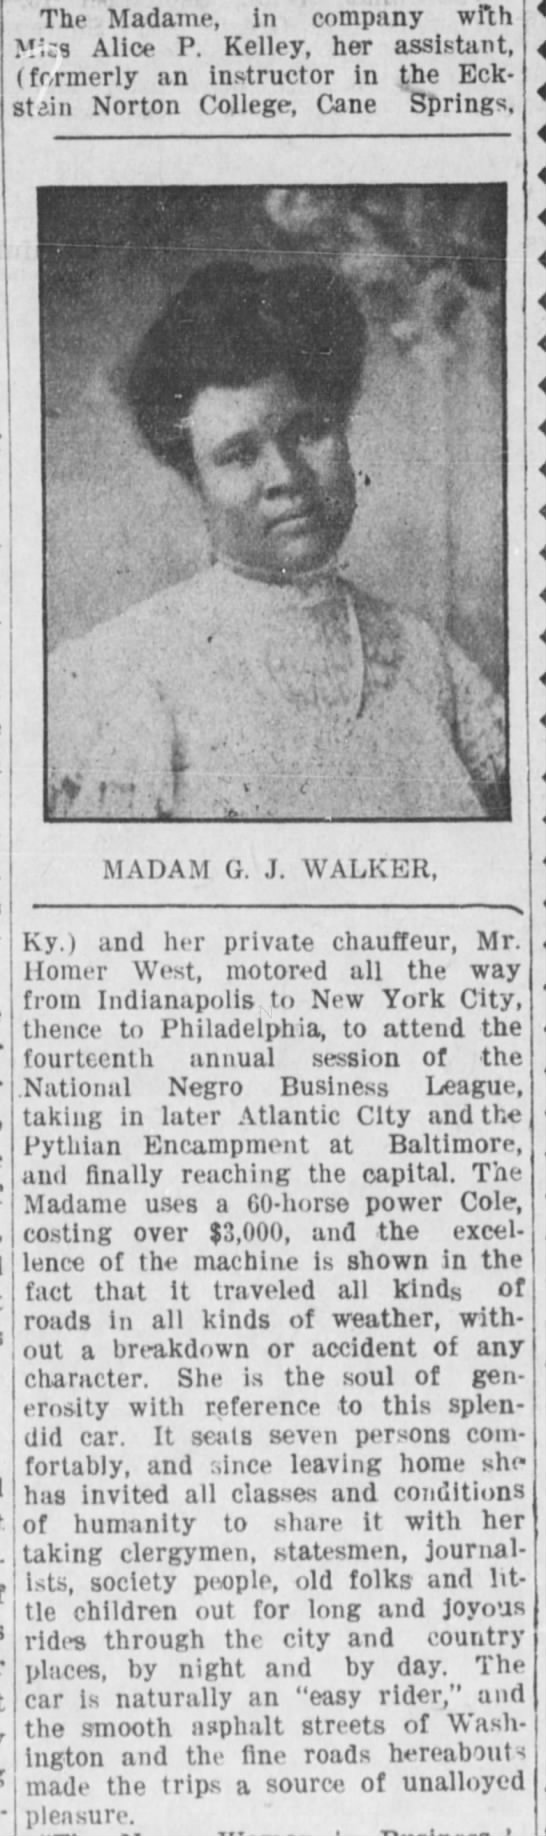 Description of Madam C.J. Walker's car and of her generosity, 1913 - 